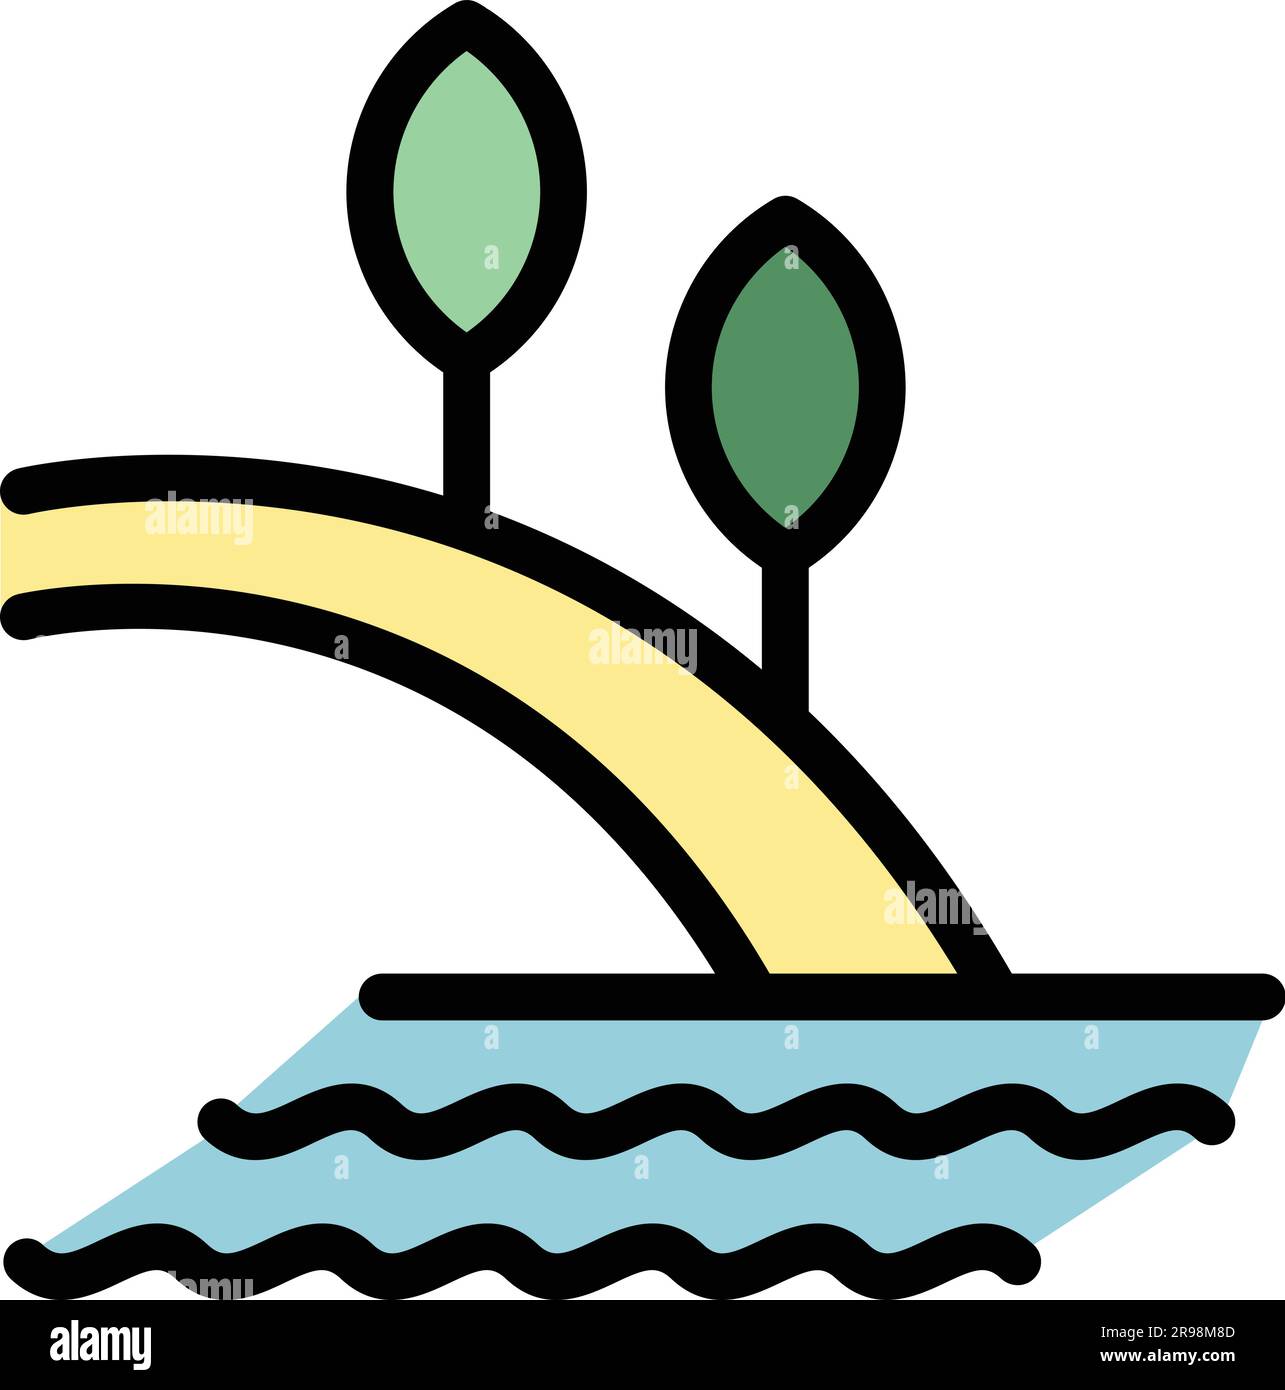 Vettore di contorno dell'icona dell'isola tropicale. Palma da spiaggia sull'oceano. Appartamento di colore paradiso estivo Illustrazione Vettoriale